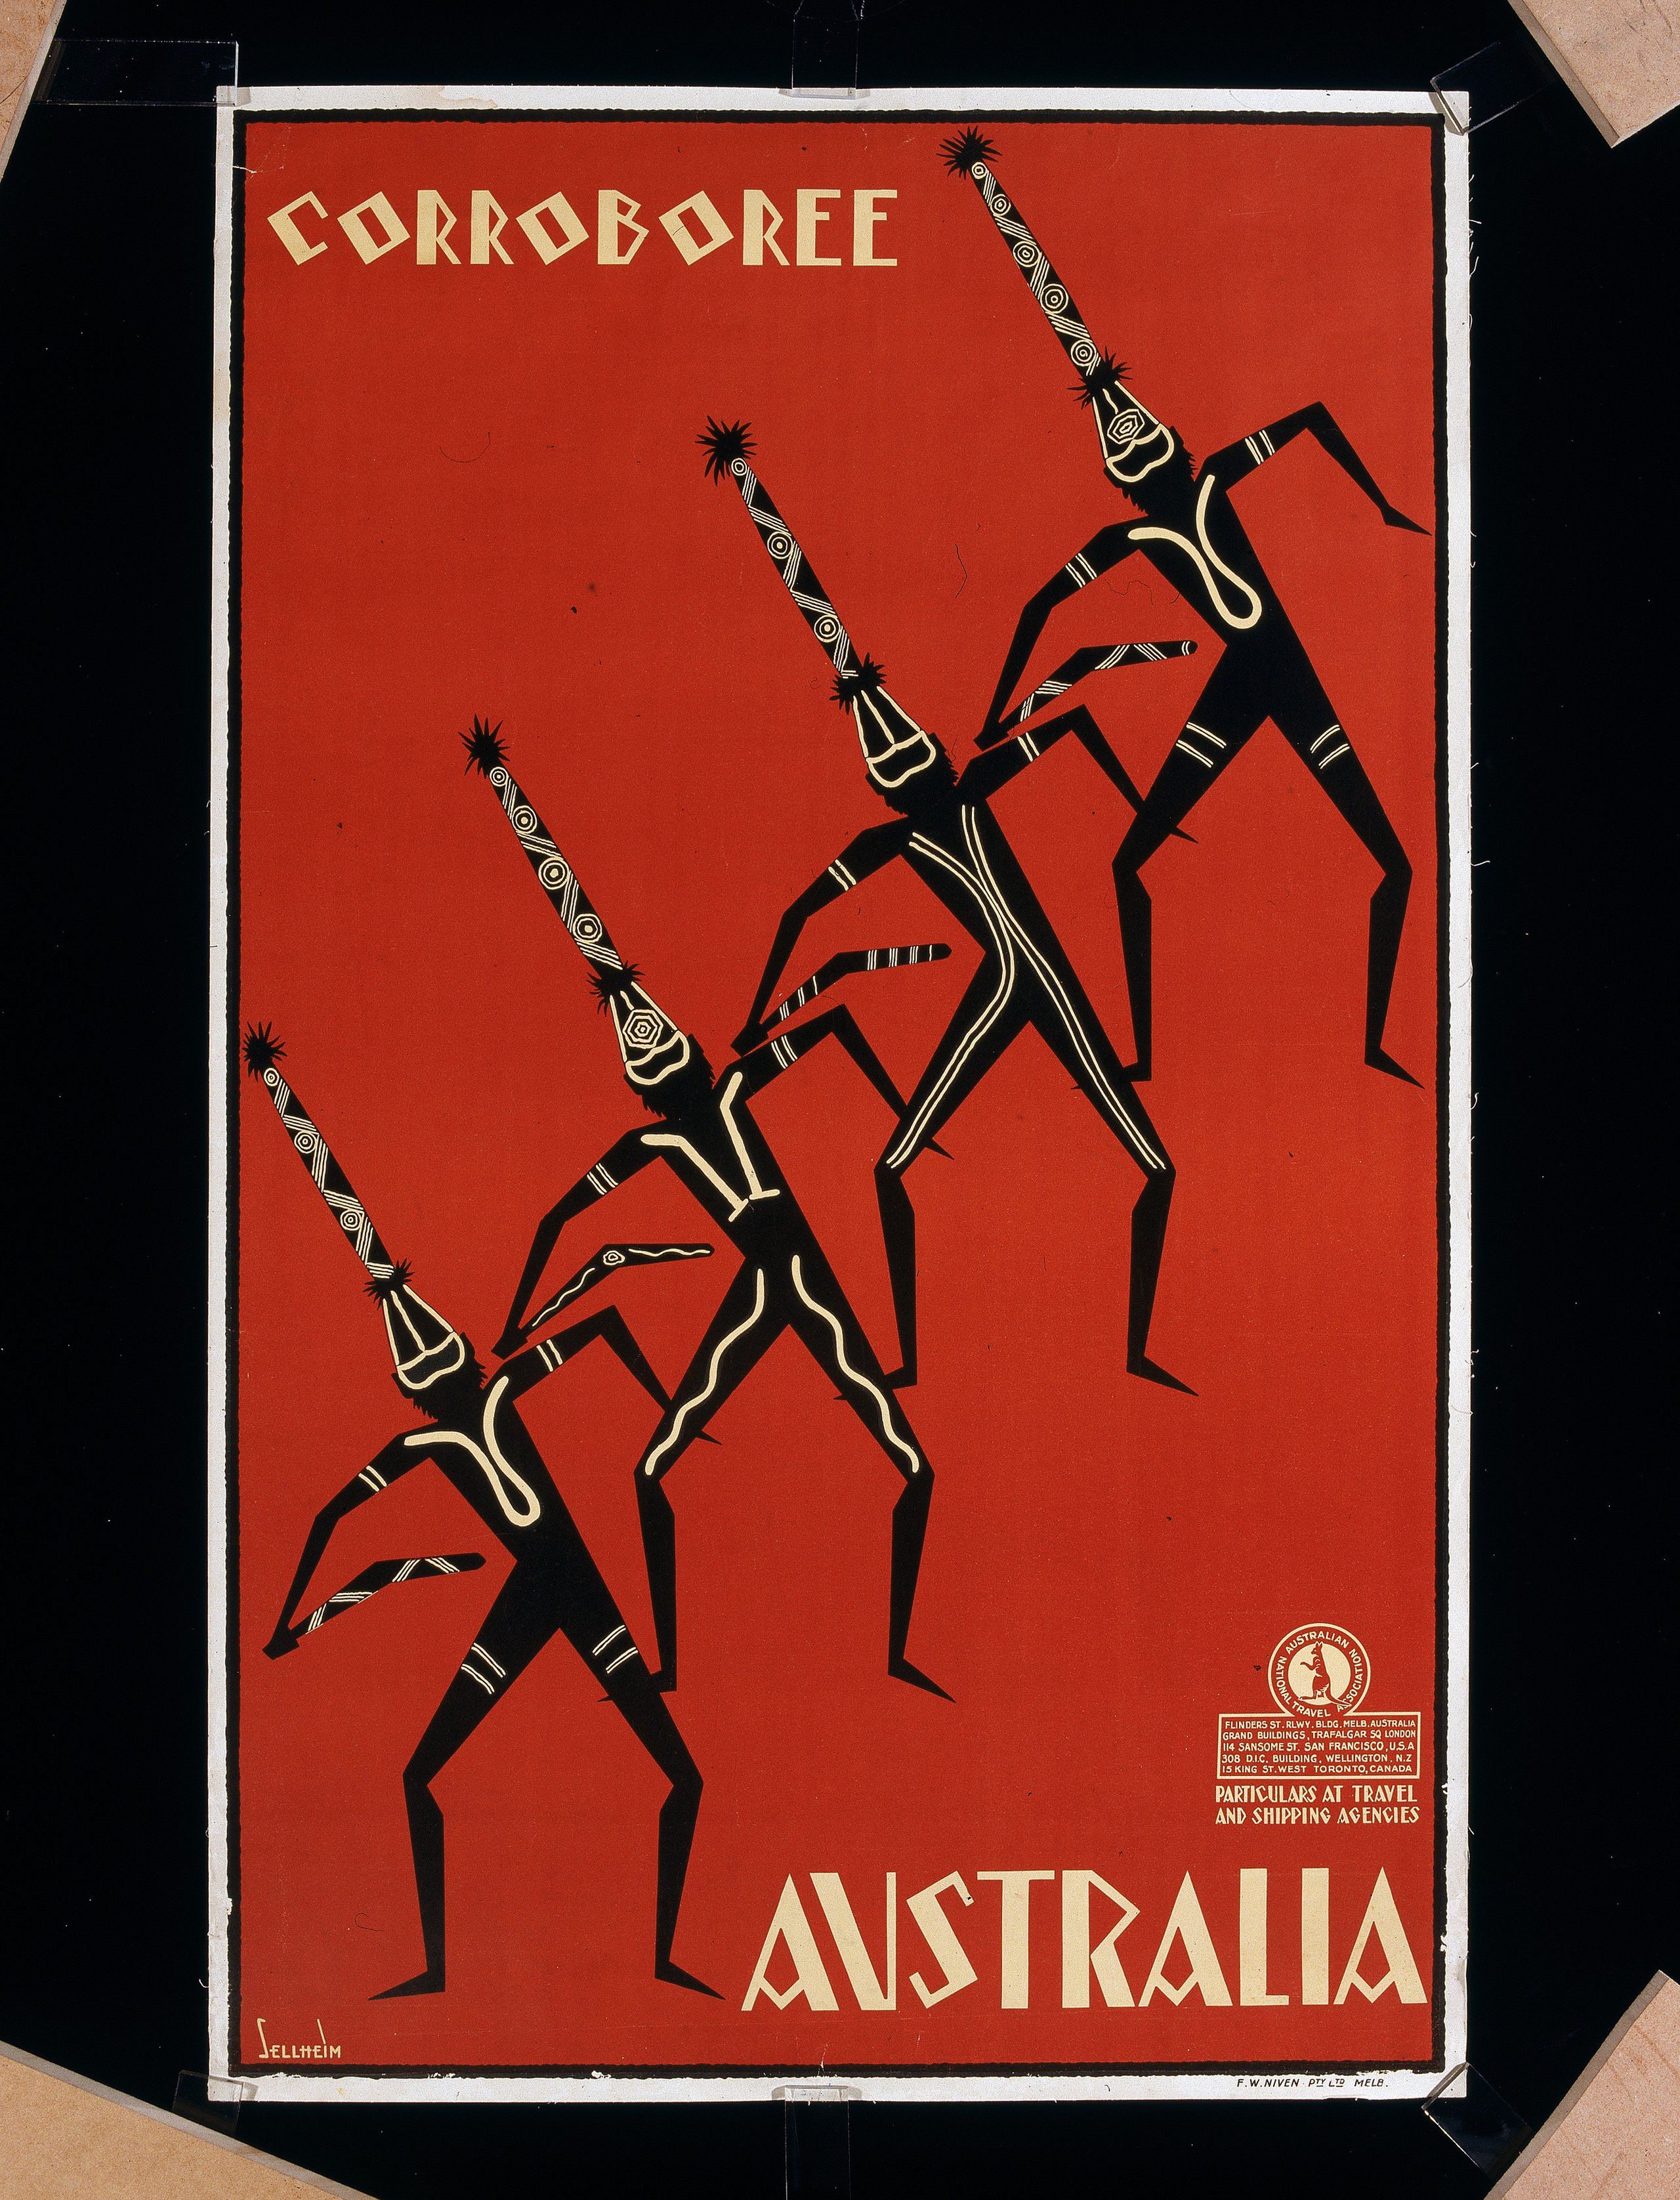 Advertising poster for the Australian National Travel Association